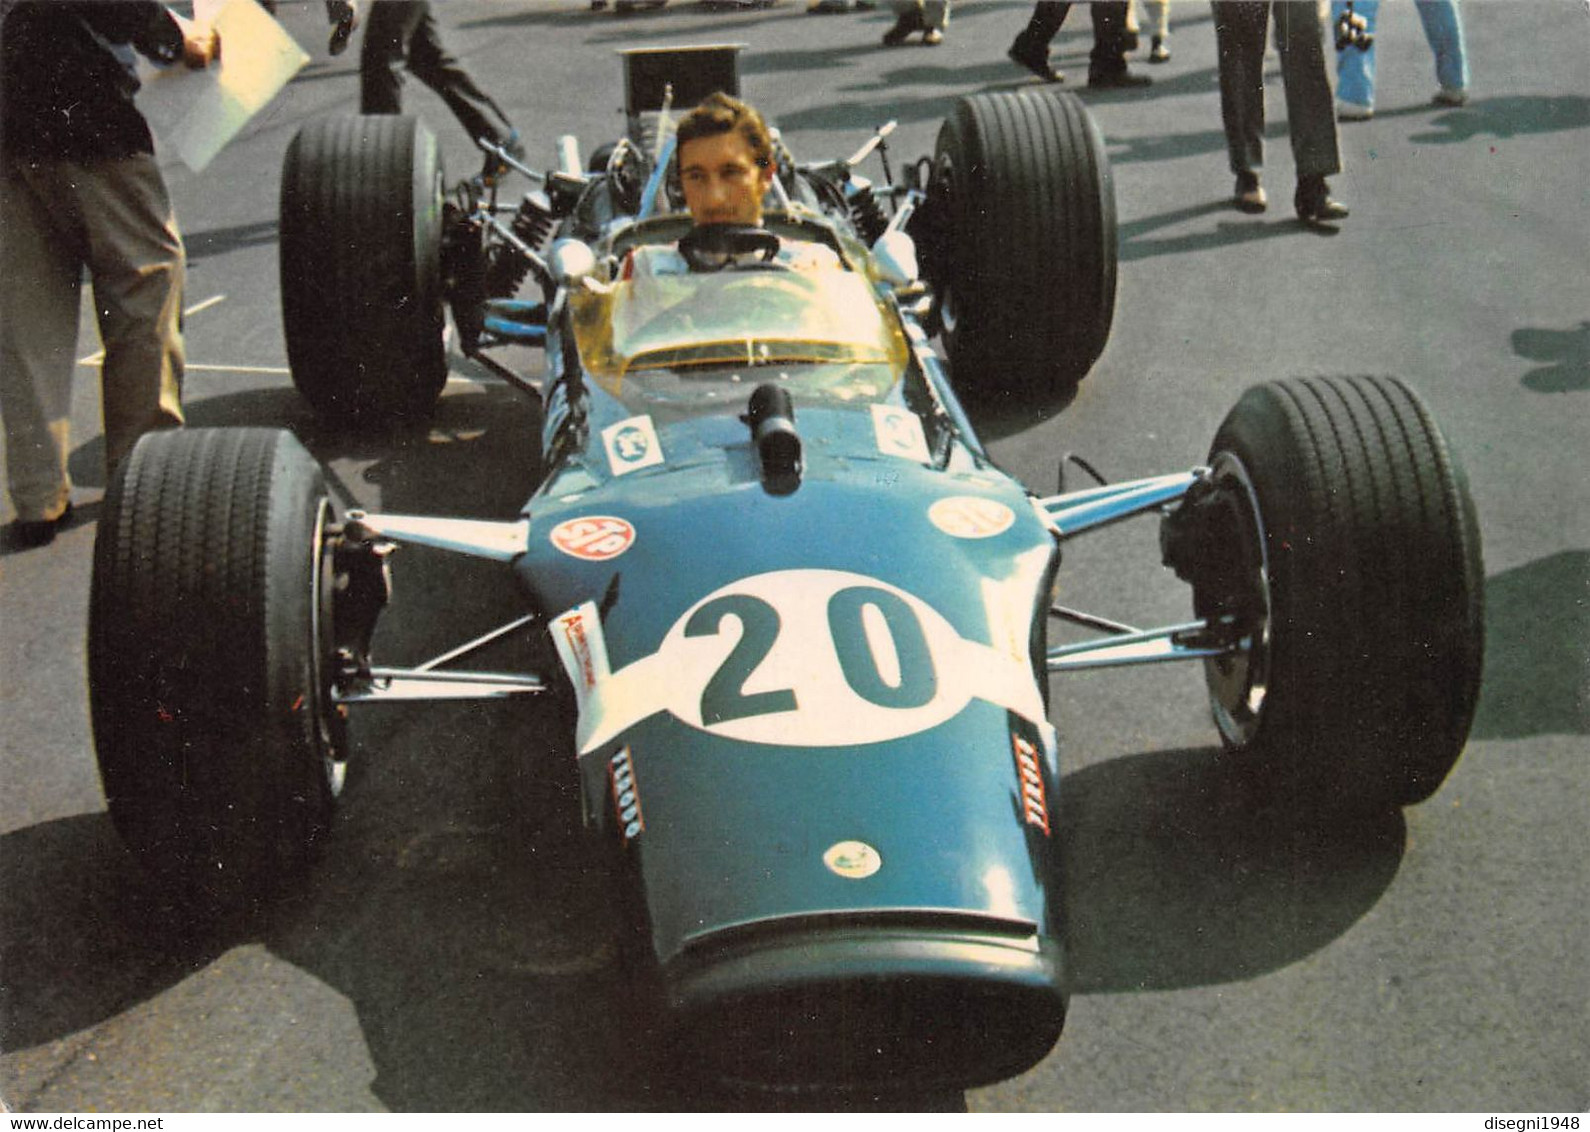 011007 " JOSEPH SIFFERT  - LOTUS FORD F. 1 1968 - GRAN PREMIO D'ITALIA 1968 - MONZA" CARTOLINA  ORIG. NON SPED. - Autosport - F1